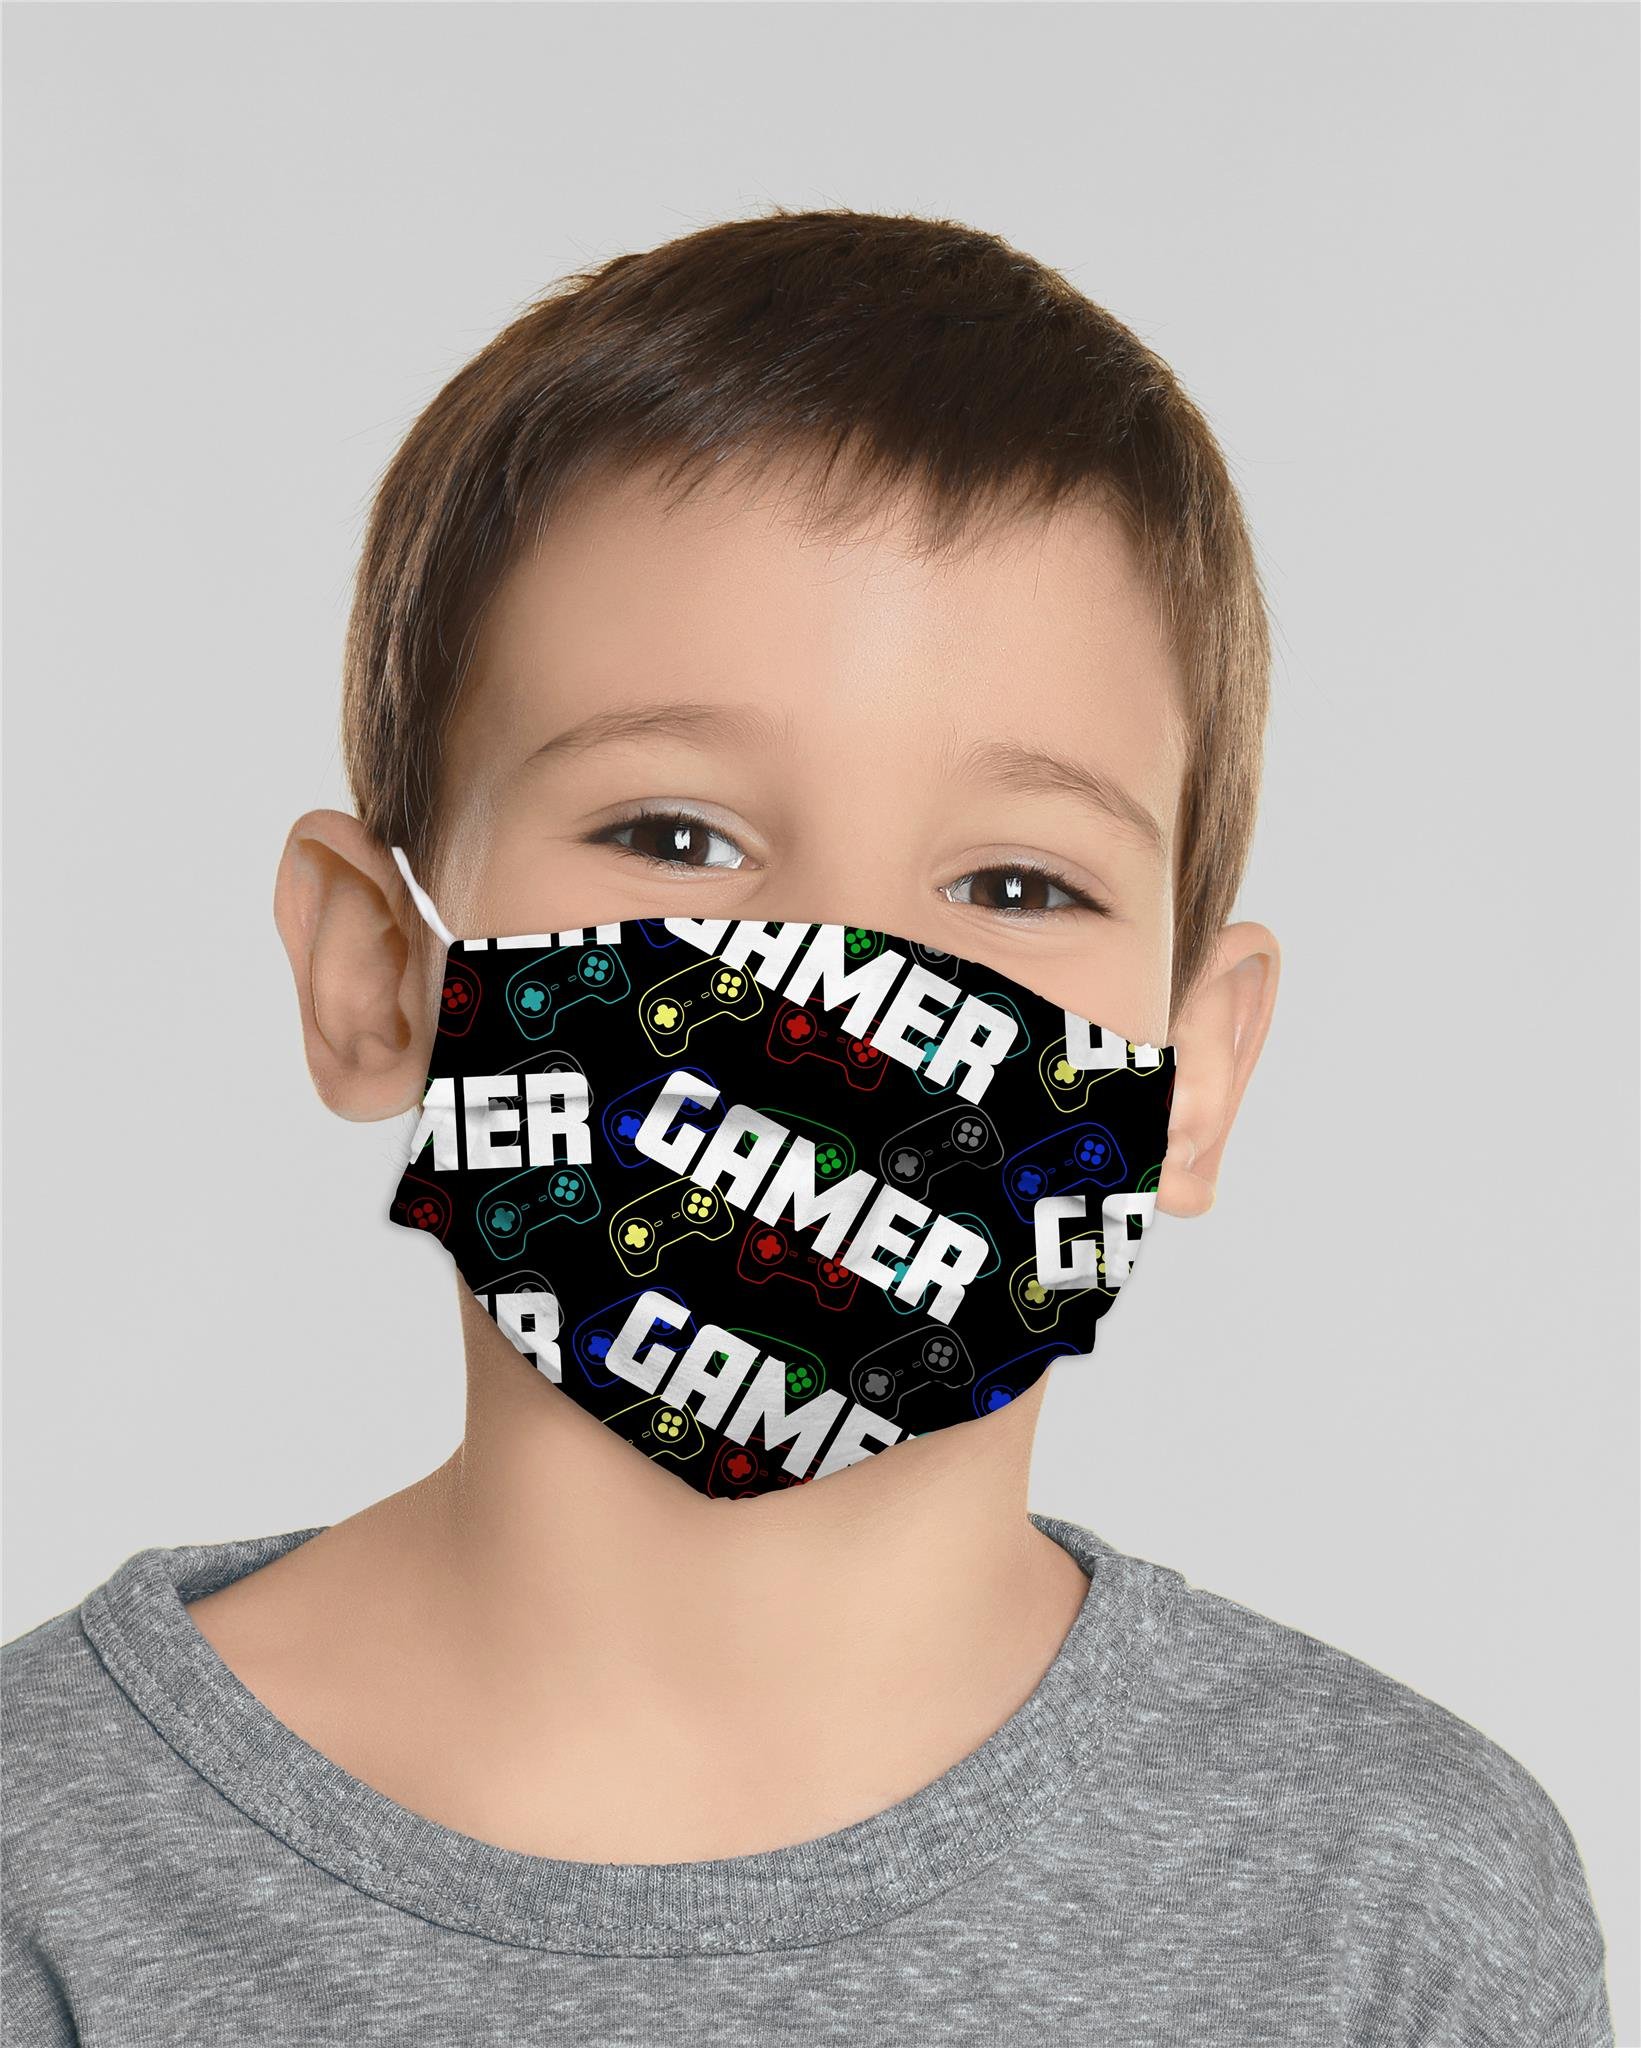 Mocco Gamer Детская хлопковая маска для лица 15x25 cm многократного использования